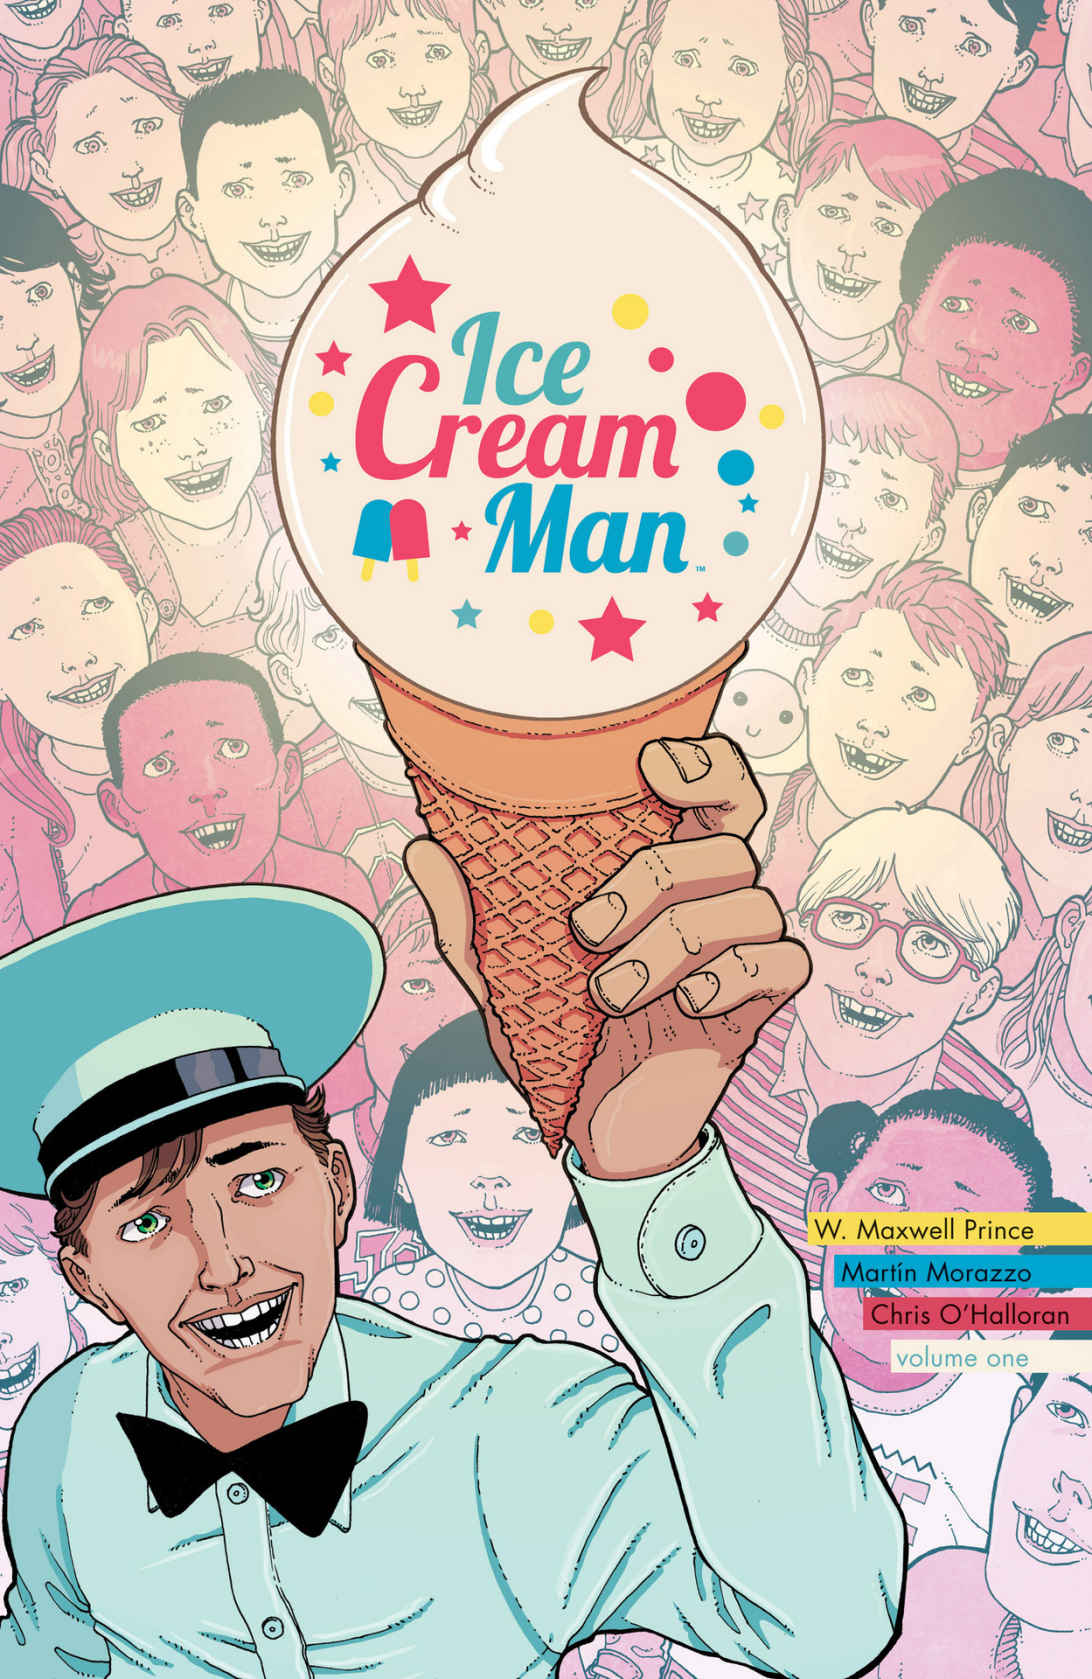 Ice Cream Man, de W. Maxwell Prince y Martín Morazzo